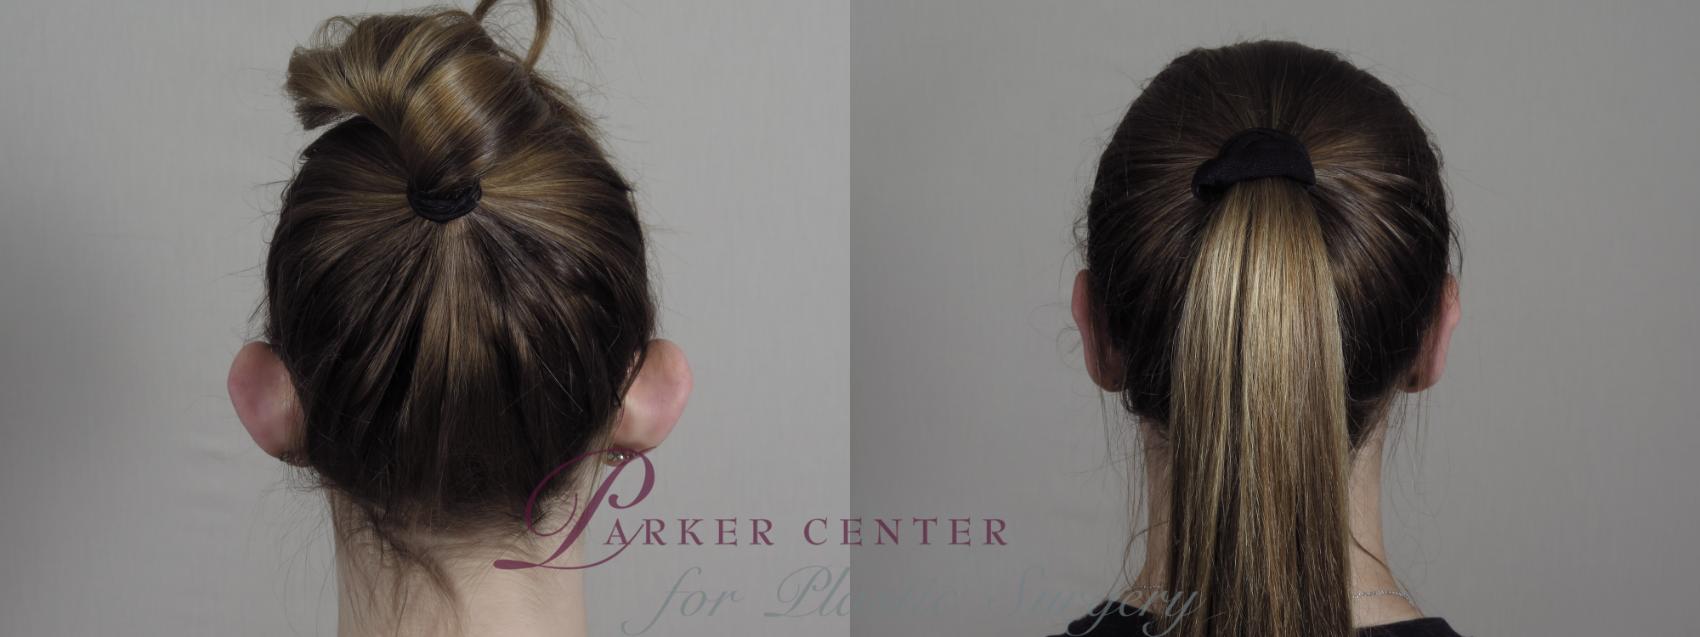 Ear Surgery Case 984 Before & After Back | Paramus, NJ | Parker Center for Plastic Surgery